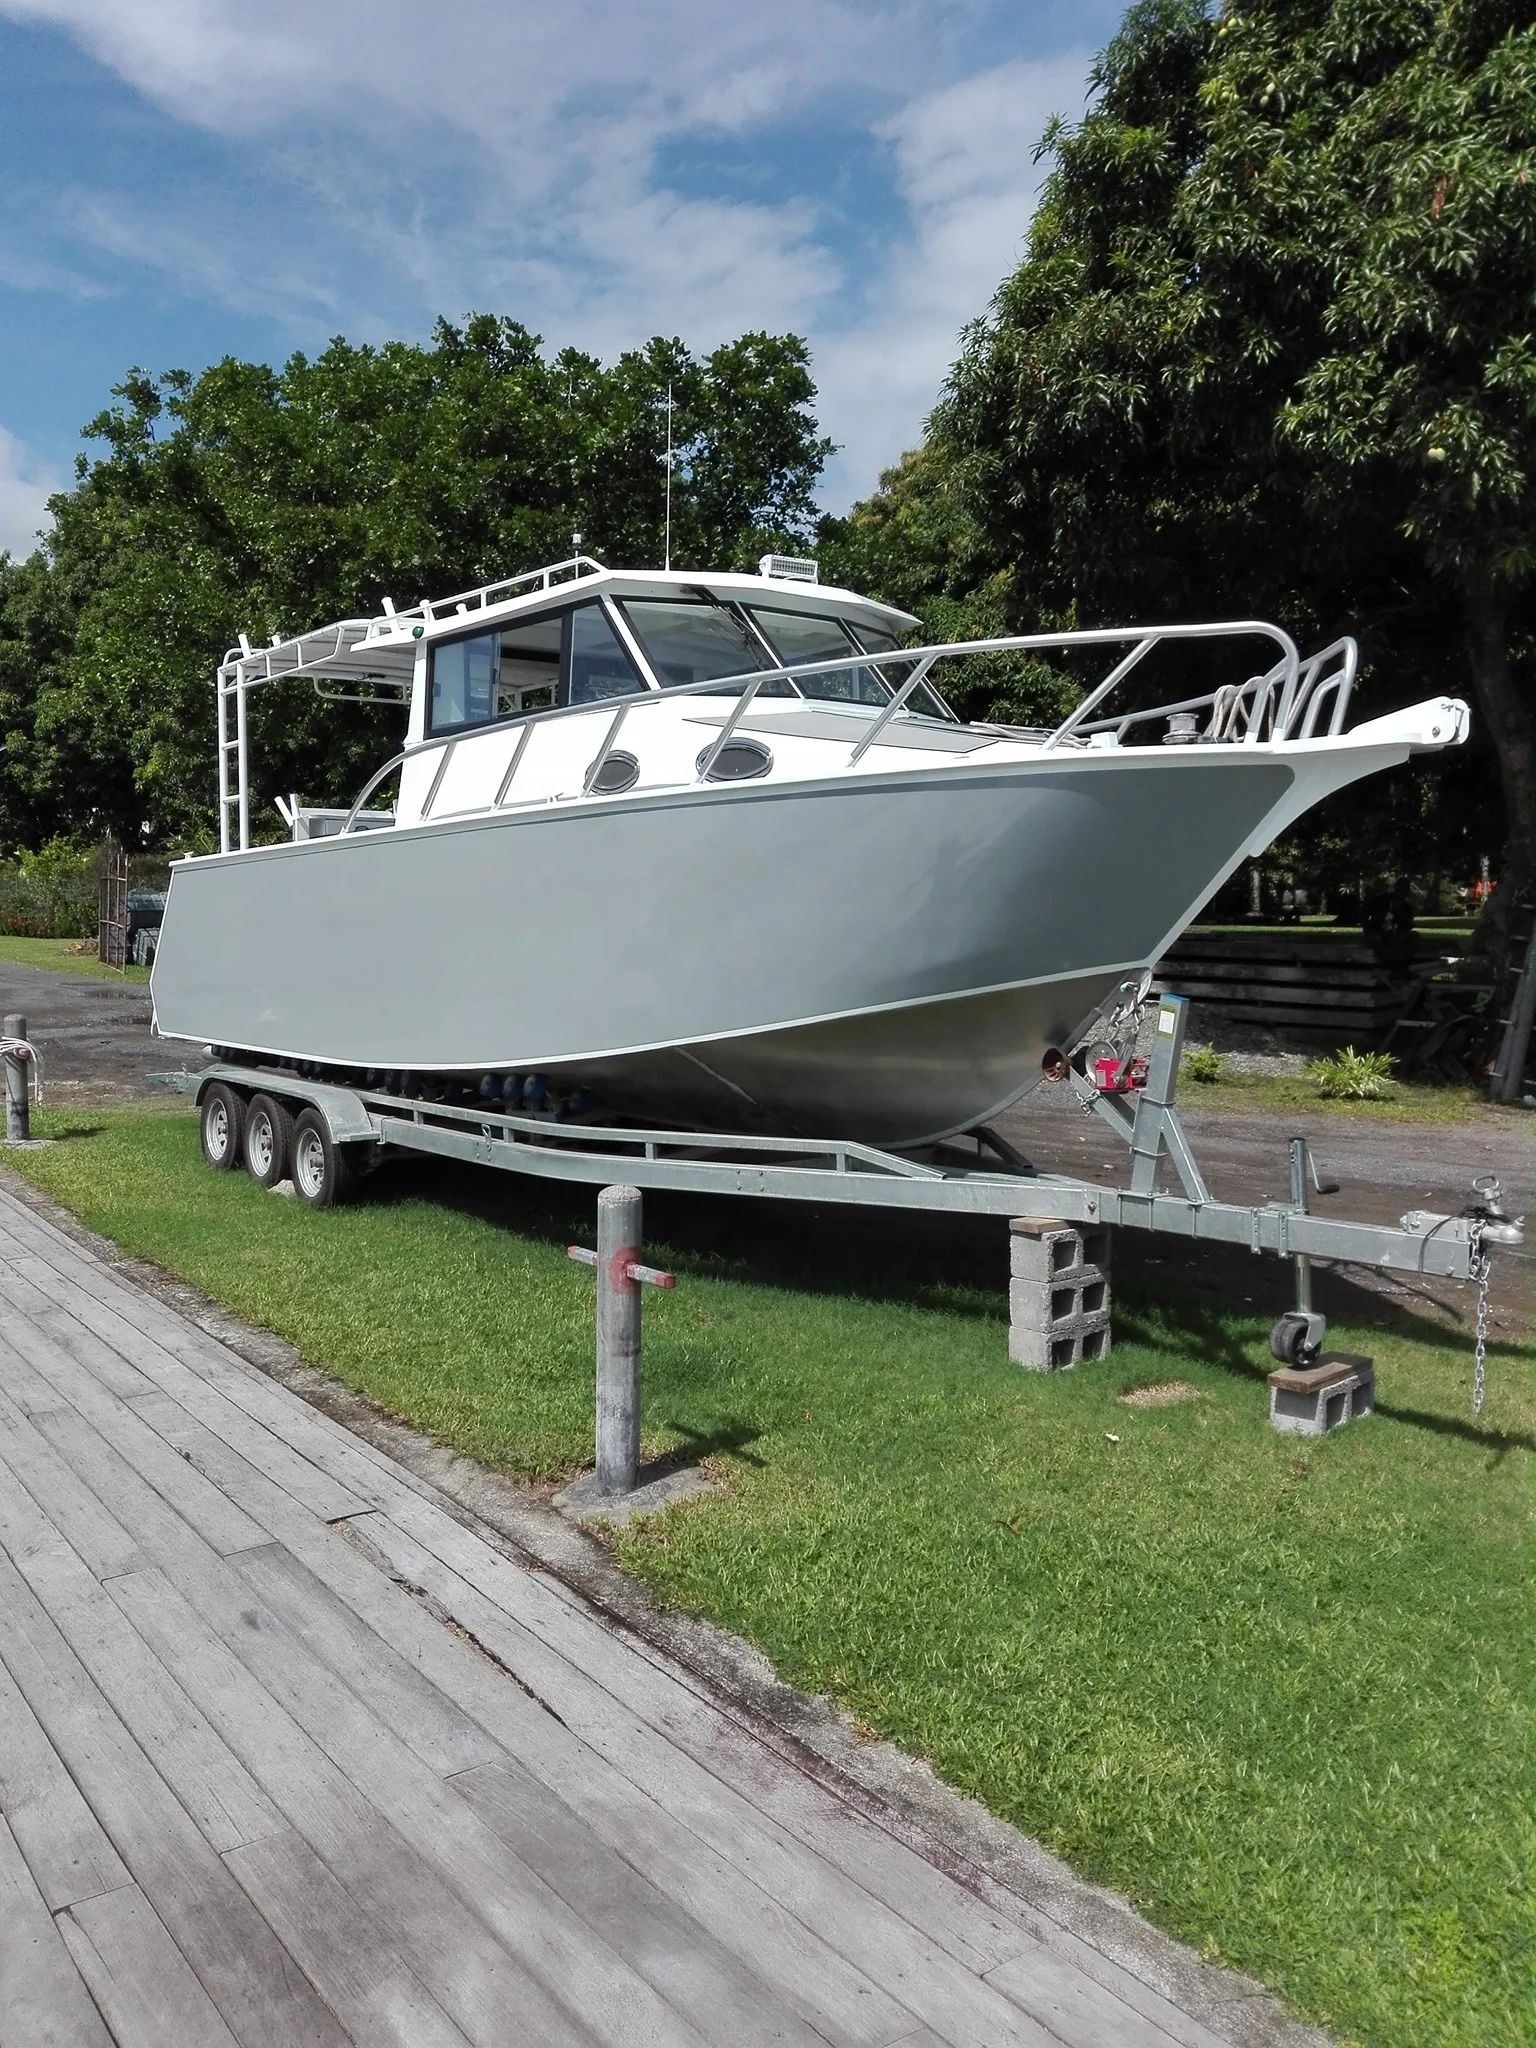 9m 30ft luxury lifestyle aluminum boat fishing vessel familyuse luxury yacht for sale